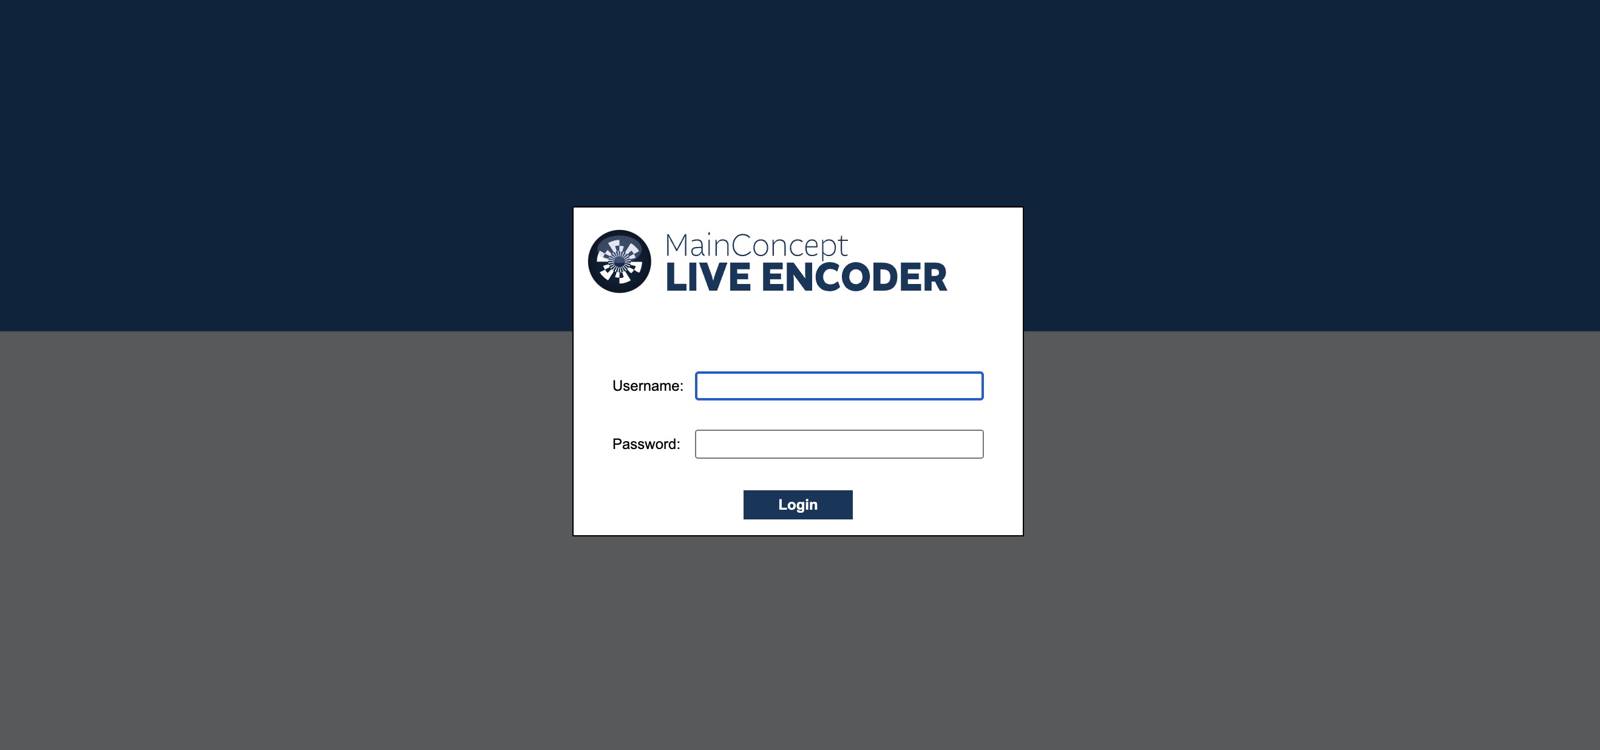 MainConcept Live Encoder Login